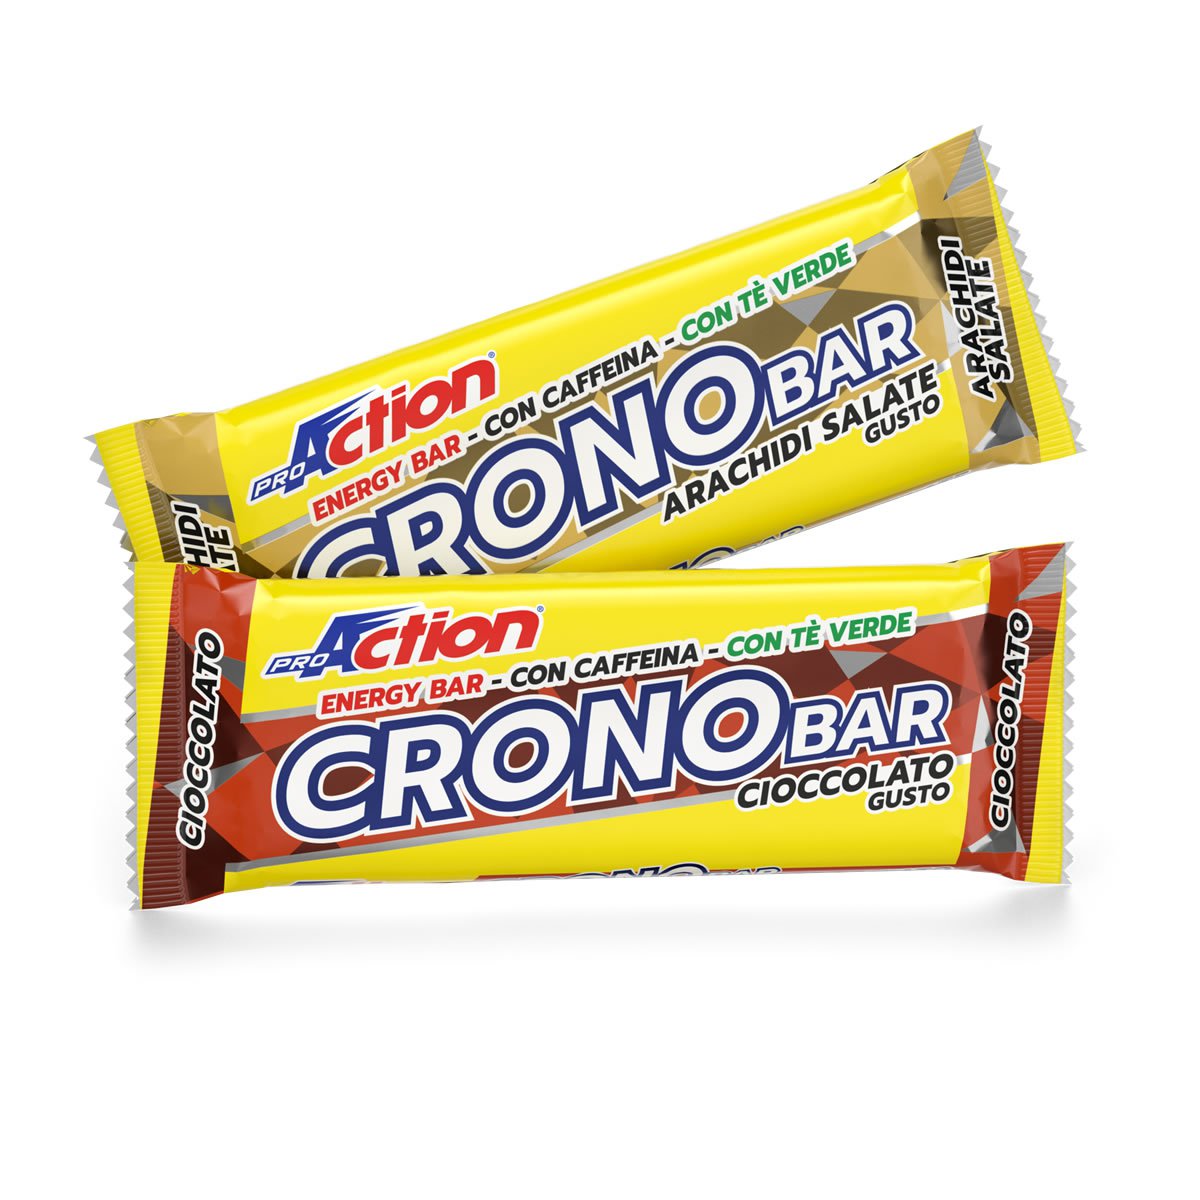 Crono Bar